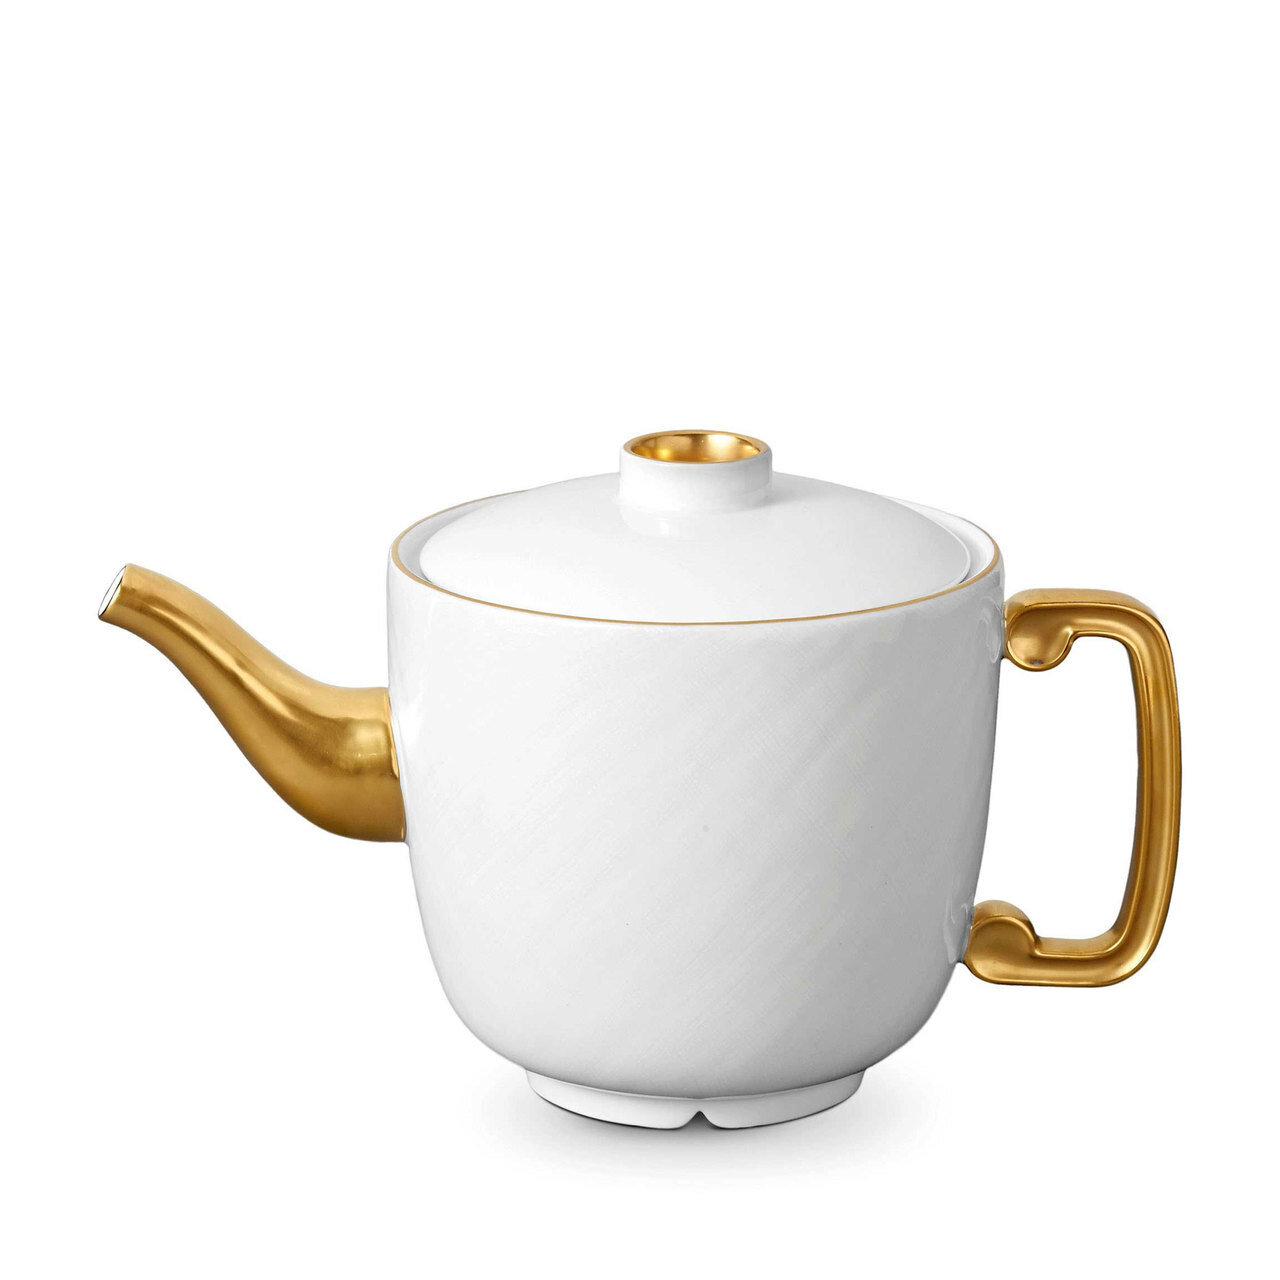 L'Objet Han Teapot Gold